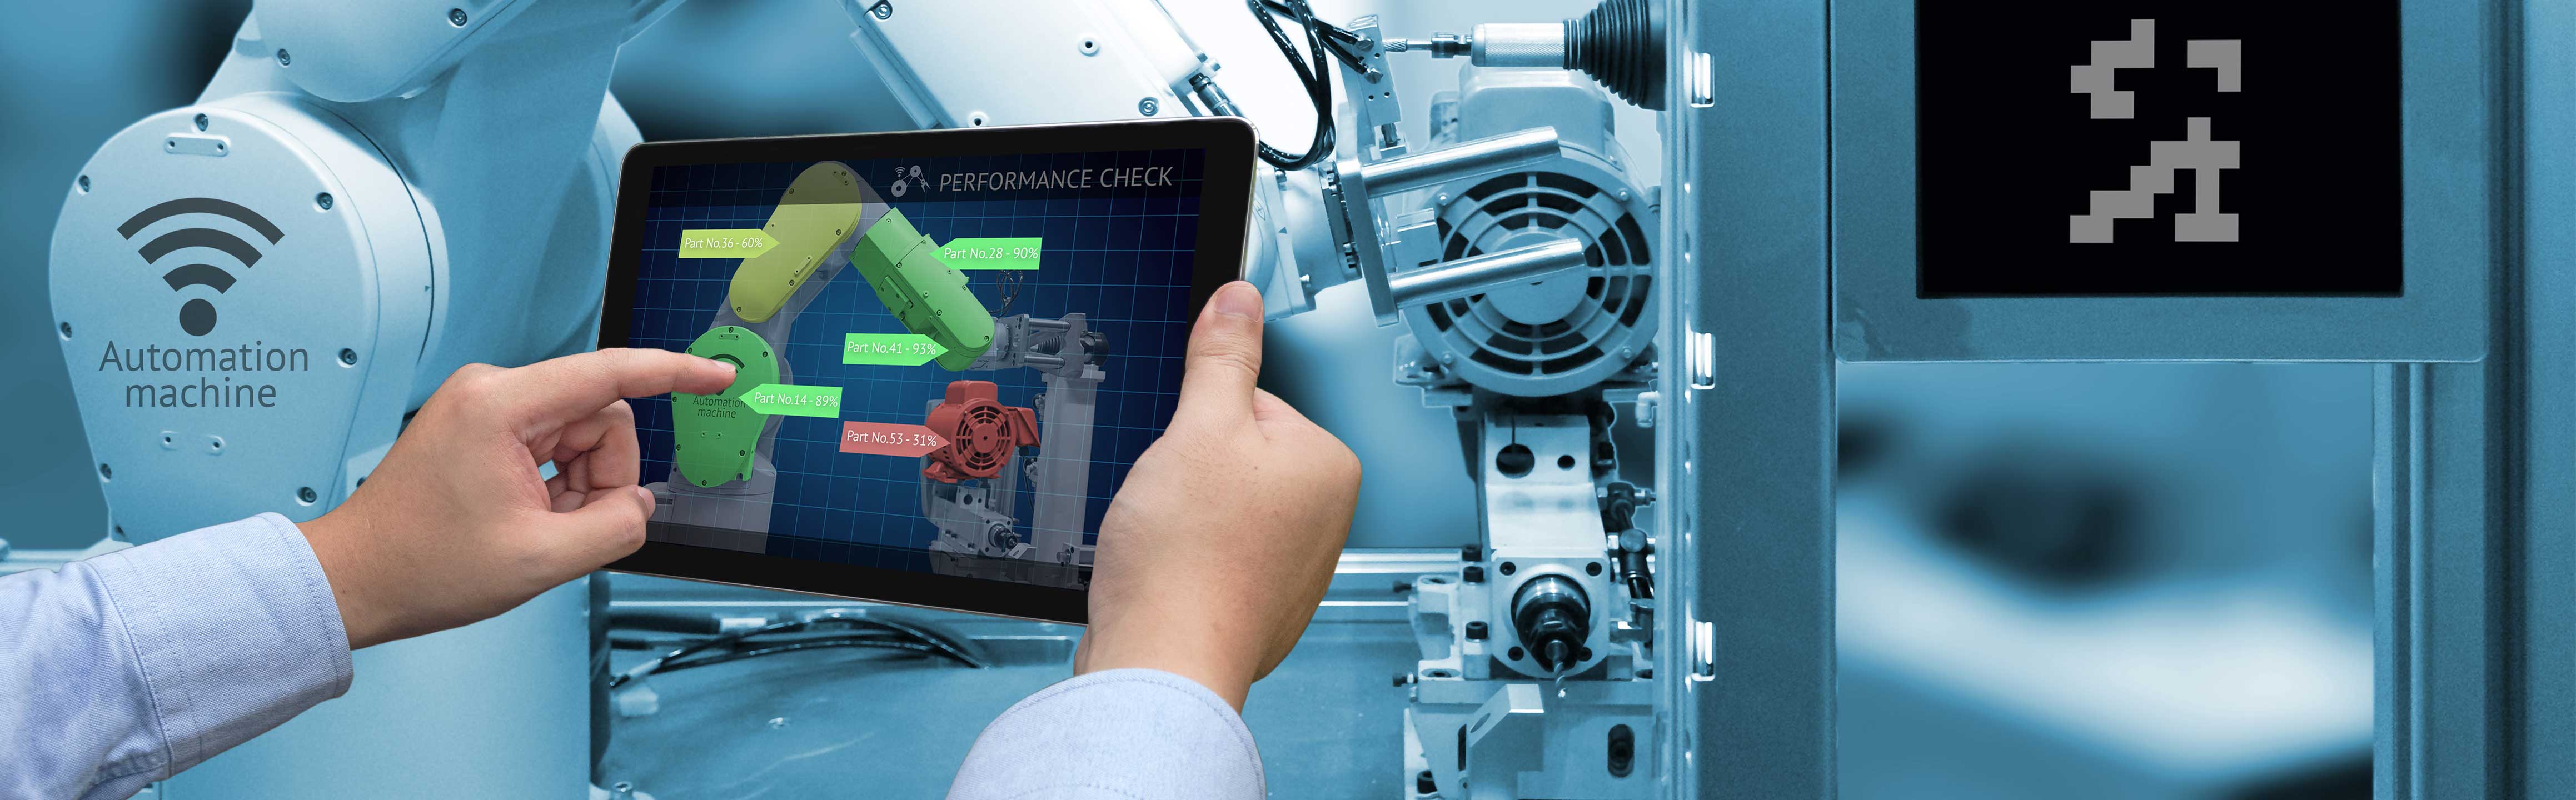 Mann steuert einen Roboterarm per Tablet in einer Industriehalle.